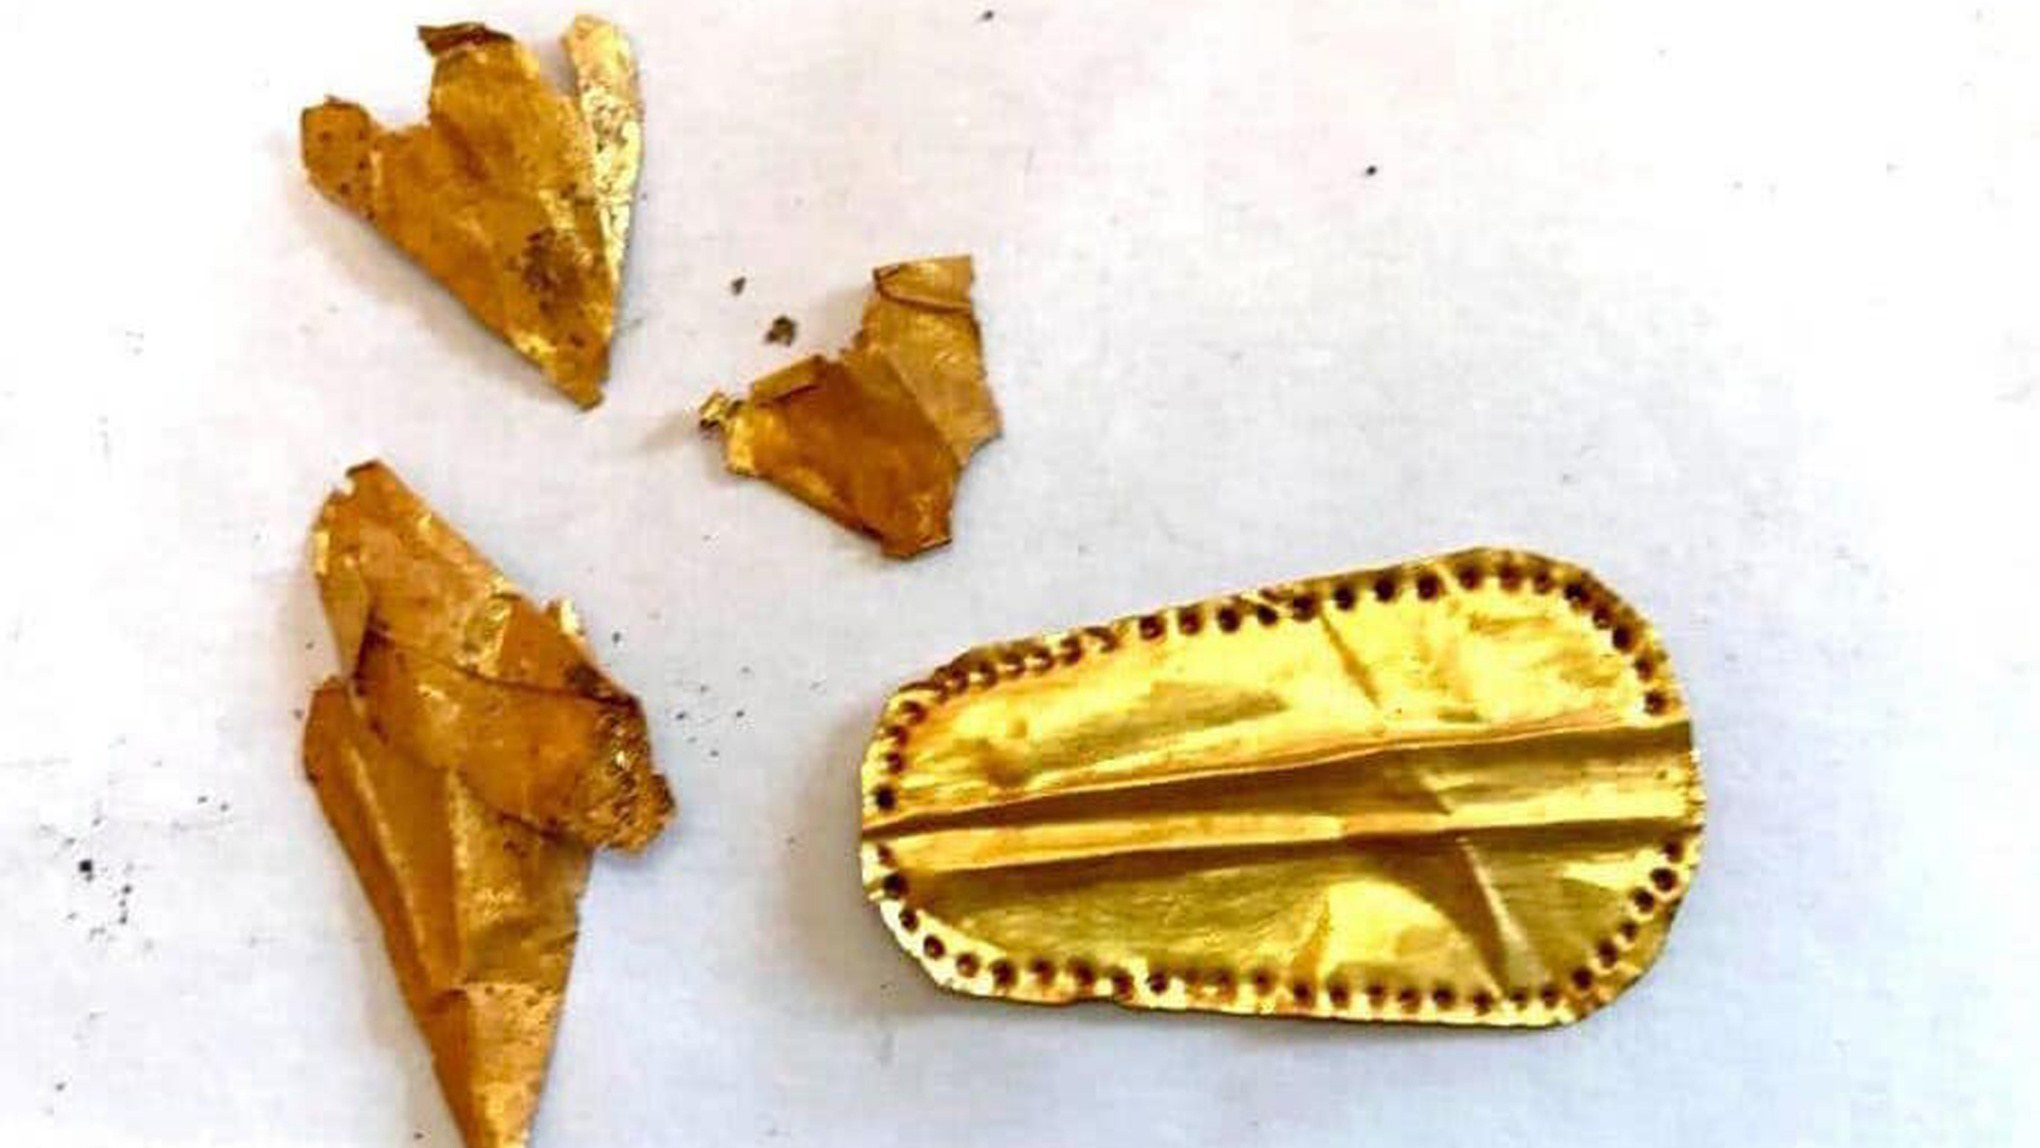 一張帶註釋的圖片顯示了在埃及 Qewaisna 墓地發現的金舌頭。